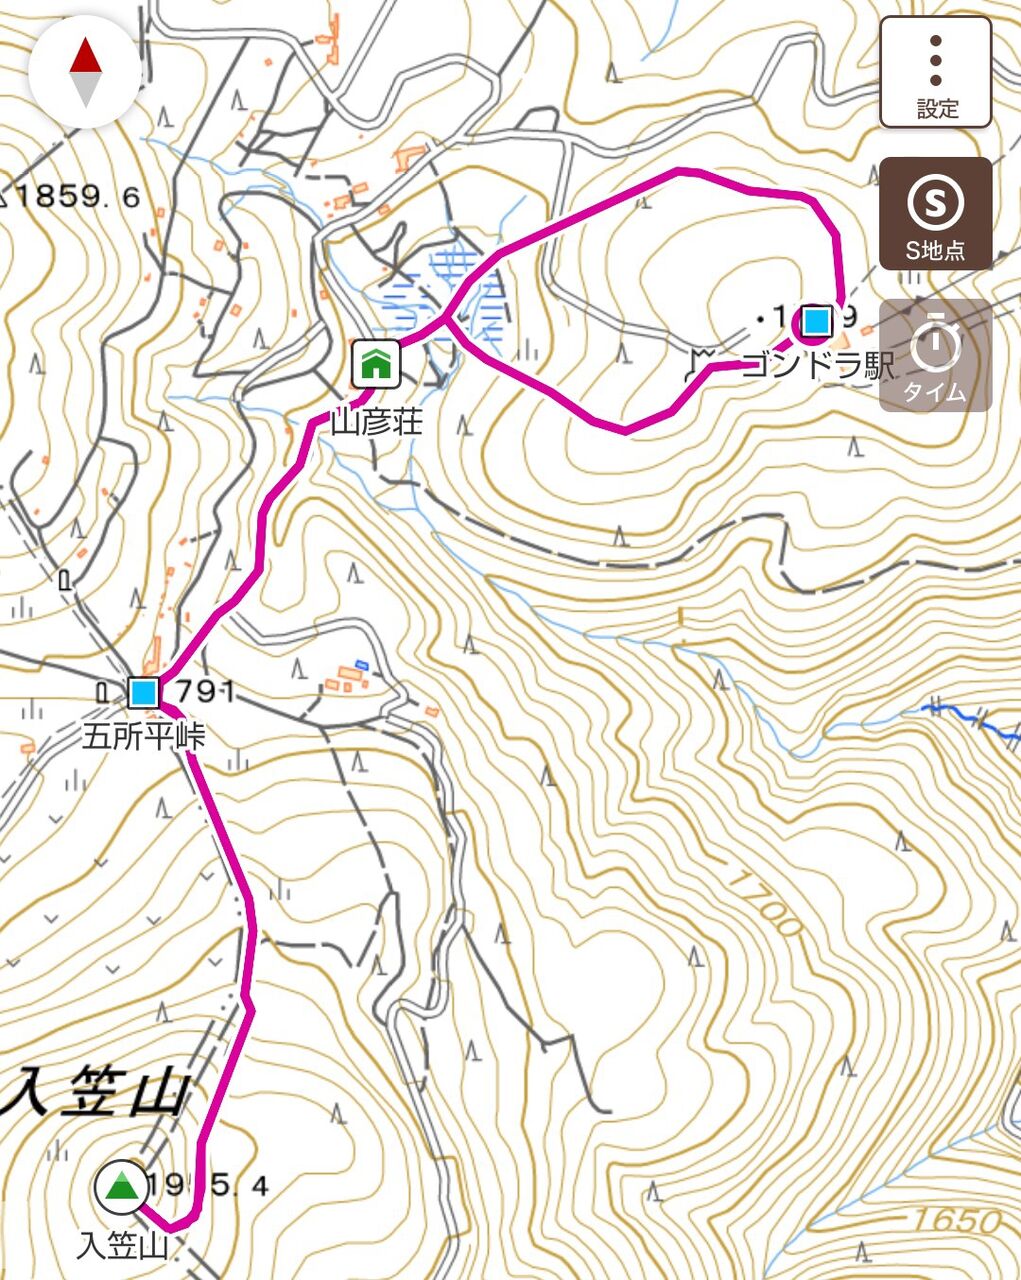 入笠山 にゅうがさやま 長野県 17 3 28 めたぼクマさんのテクテク山登り